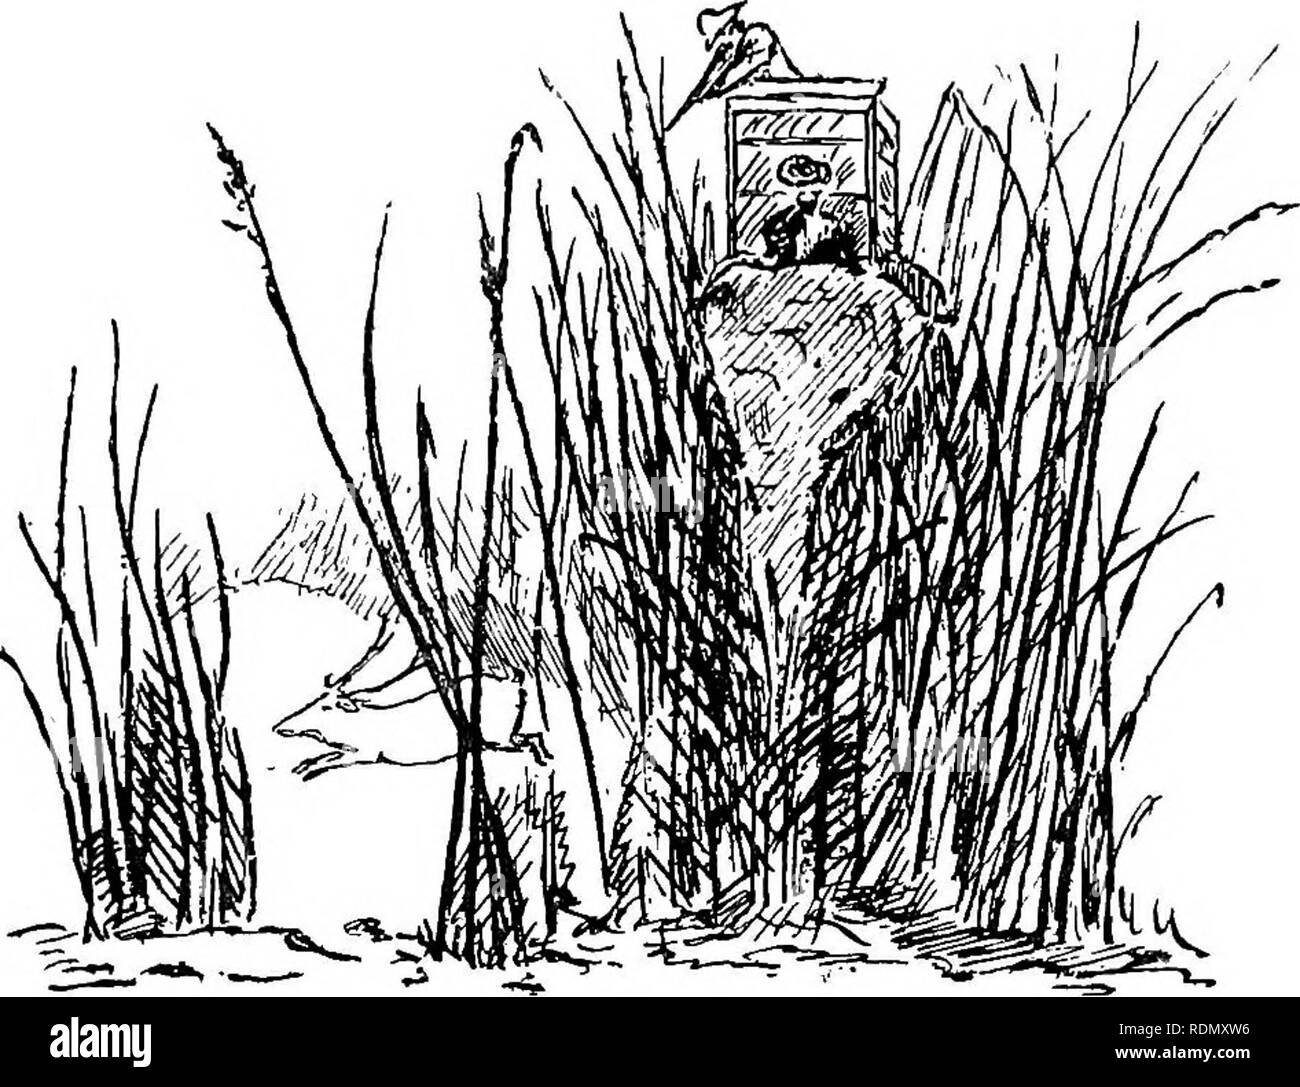 . Dschungel von-möglichkeiten in Indien; Blätter von den Hinweis - das Buch der ein Sportler und einem Naturwissenschaftler. Jagd; Natural History. Kapitel V Der hog Rotwild - Aussehen und Hörner - Gewohnheiten - Wie zu schießen - Schießen aus der Elefant im Gras Dschungel - Schwierige Schüsse - Stiel-ing-Titel - bellende Rehe orkakar - Eine nervige kleine Tier - Aussehen - neugierig Hörner - Titel - Gewohnheiten - Einfach zu Halm und Töten - Jungen - Indische maus Rotwild - ein kleines Reh - Gewohnheiten - hat keine Trophäe. Die HOG HIRSCH für seine Größe der hog Hirsch (Cervus porcinus) oder para, wie er in den Vereinigten Provinzen bezeichnet, ist ein Plumpes httle Tier ähnelt in vielerlei Hinsicht ein SAMBHAR en m Stockfoto